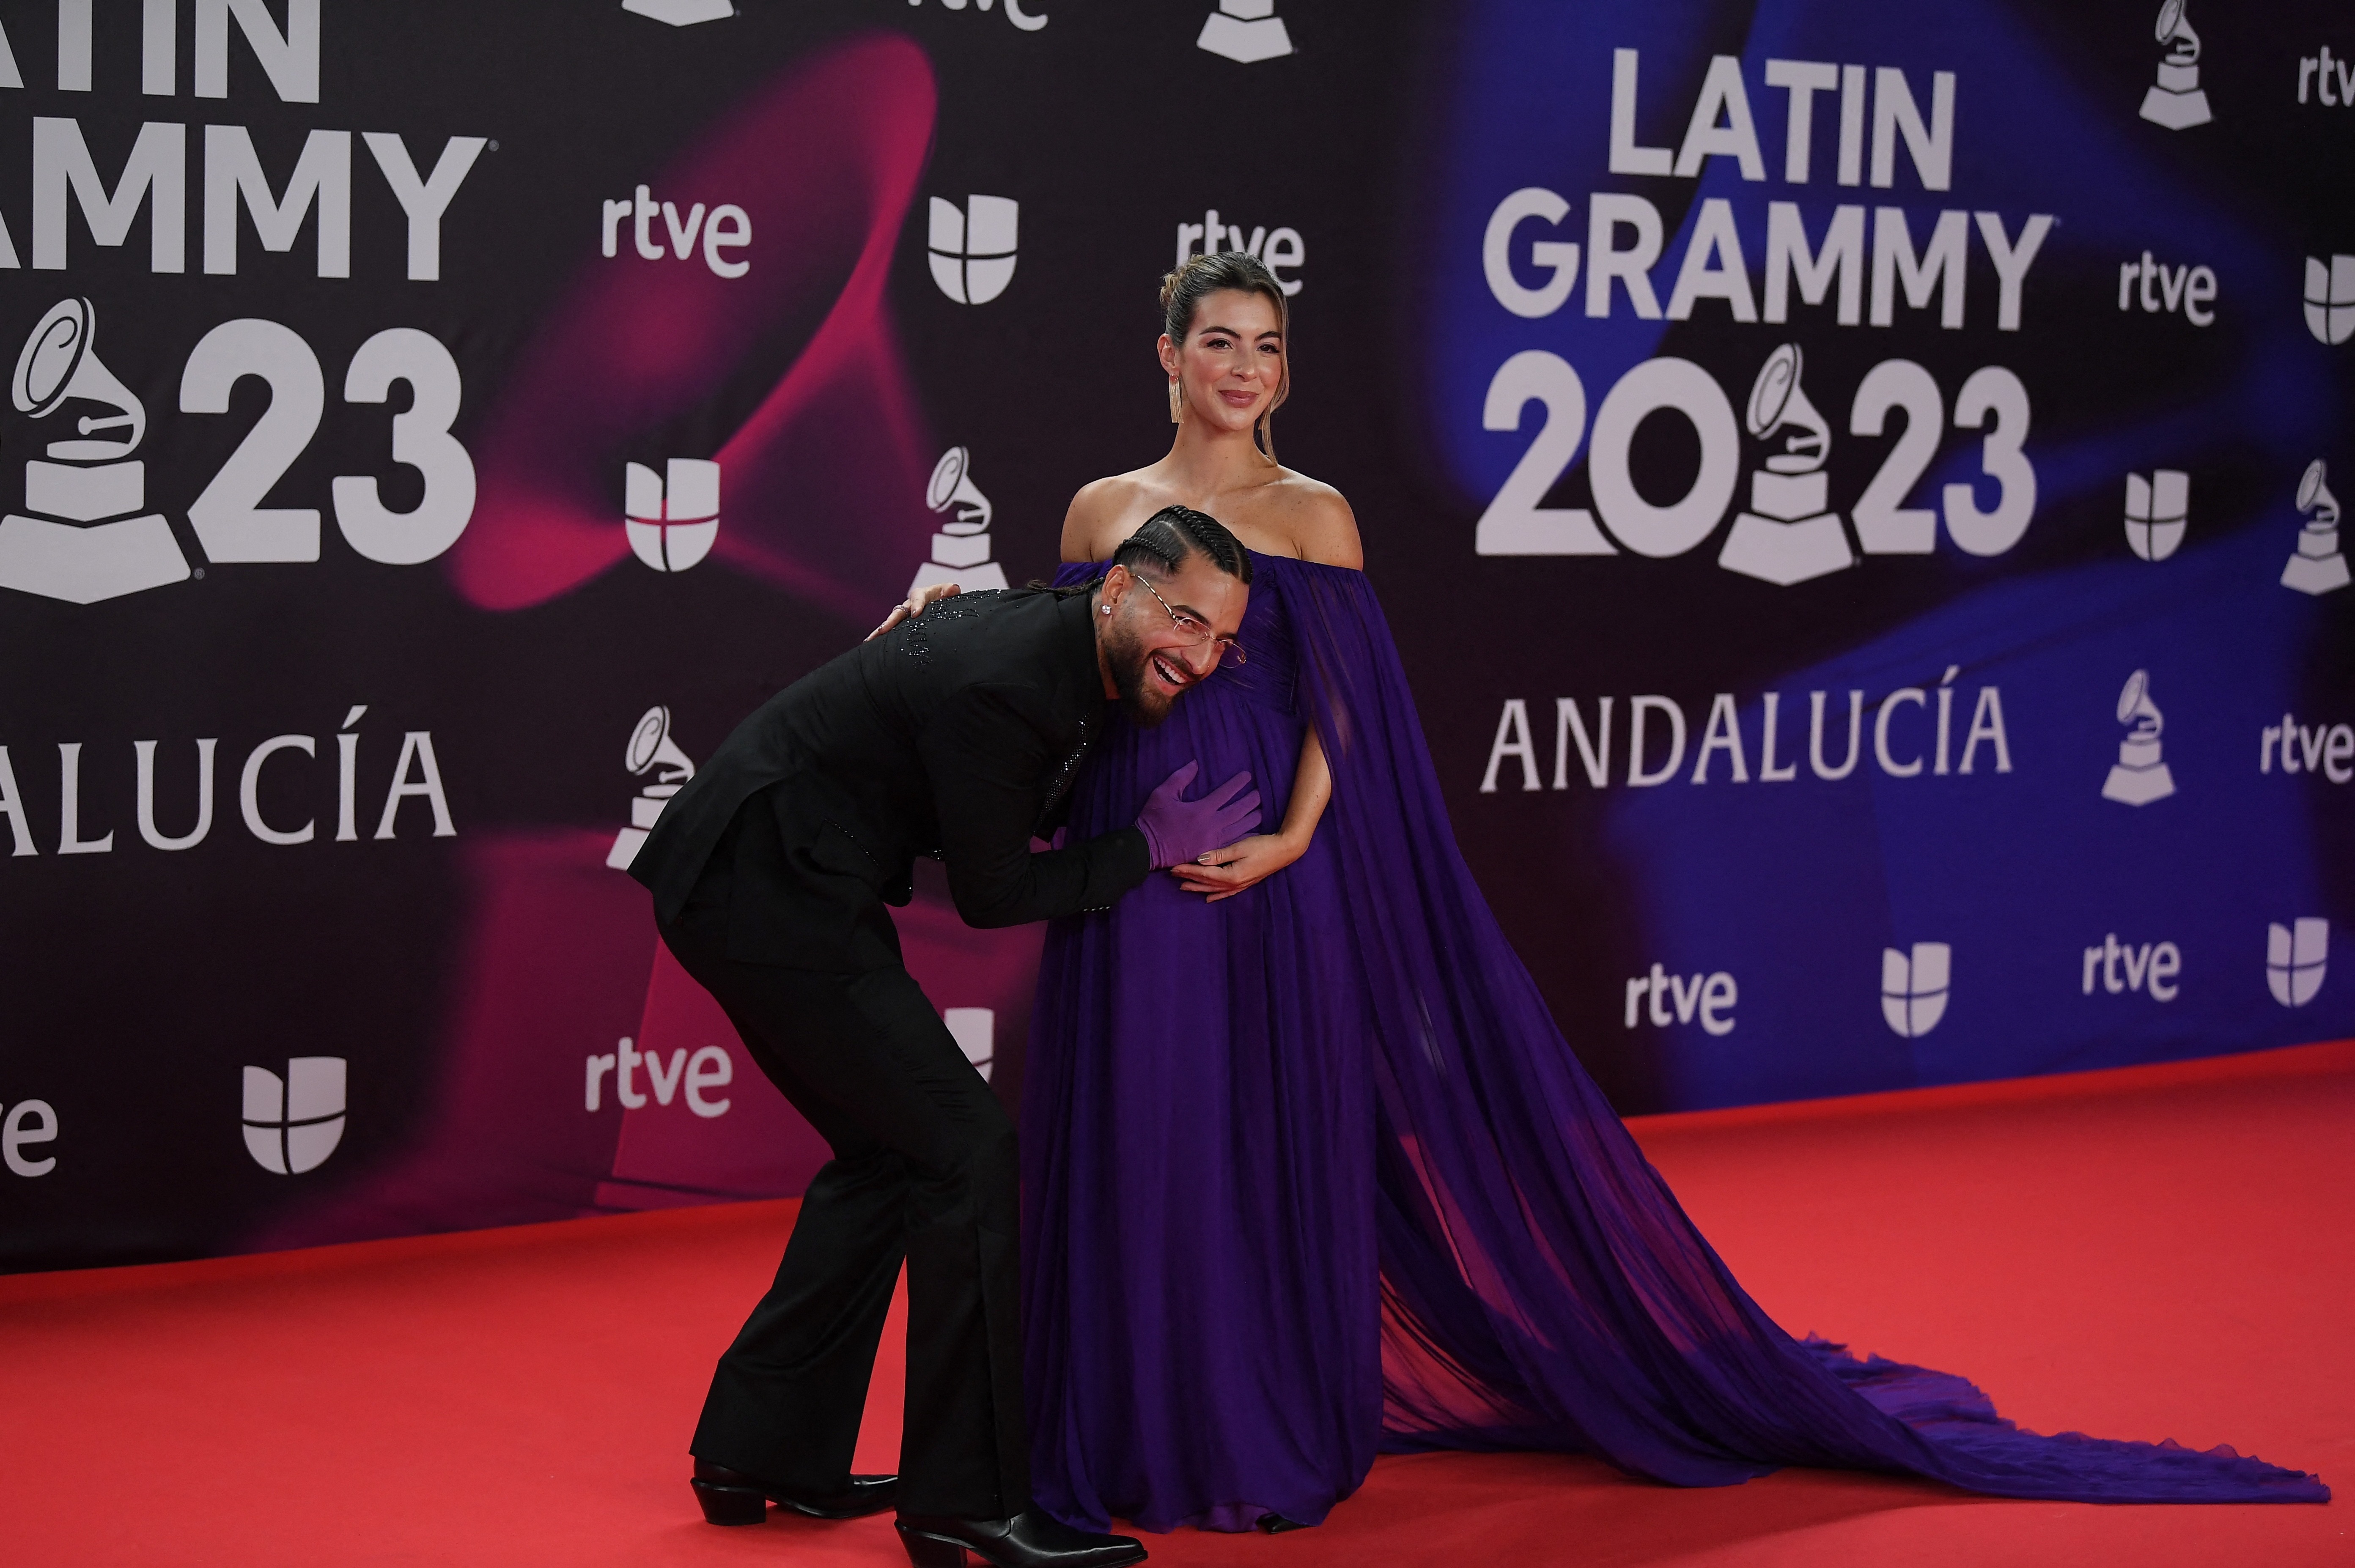 Maluma y Susana Giménez se convertirán en padres dentro de tres meses, según algunos medios / Foto: AFP